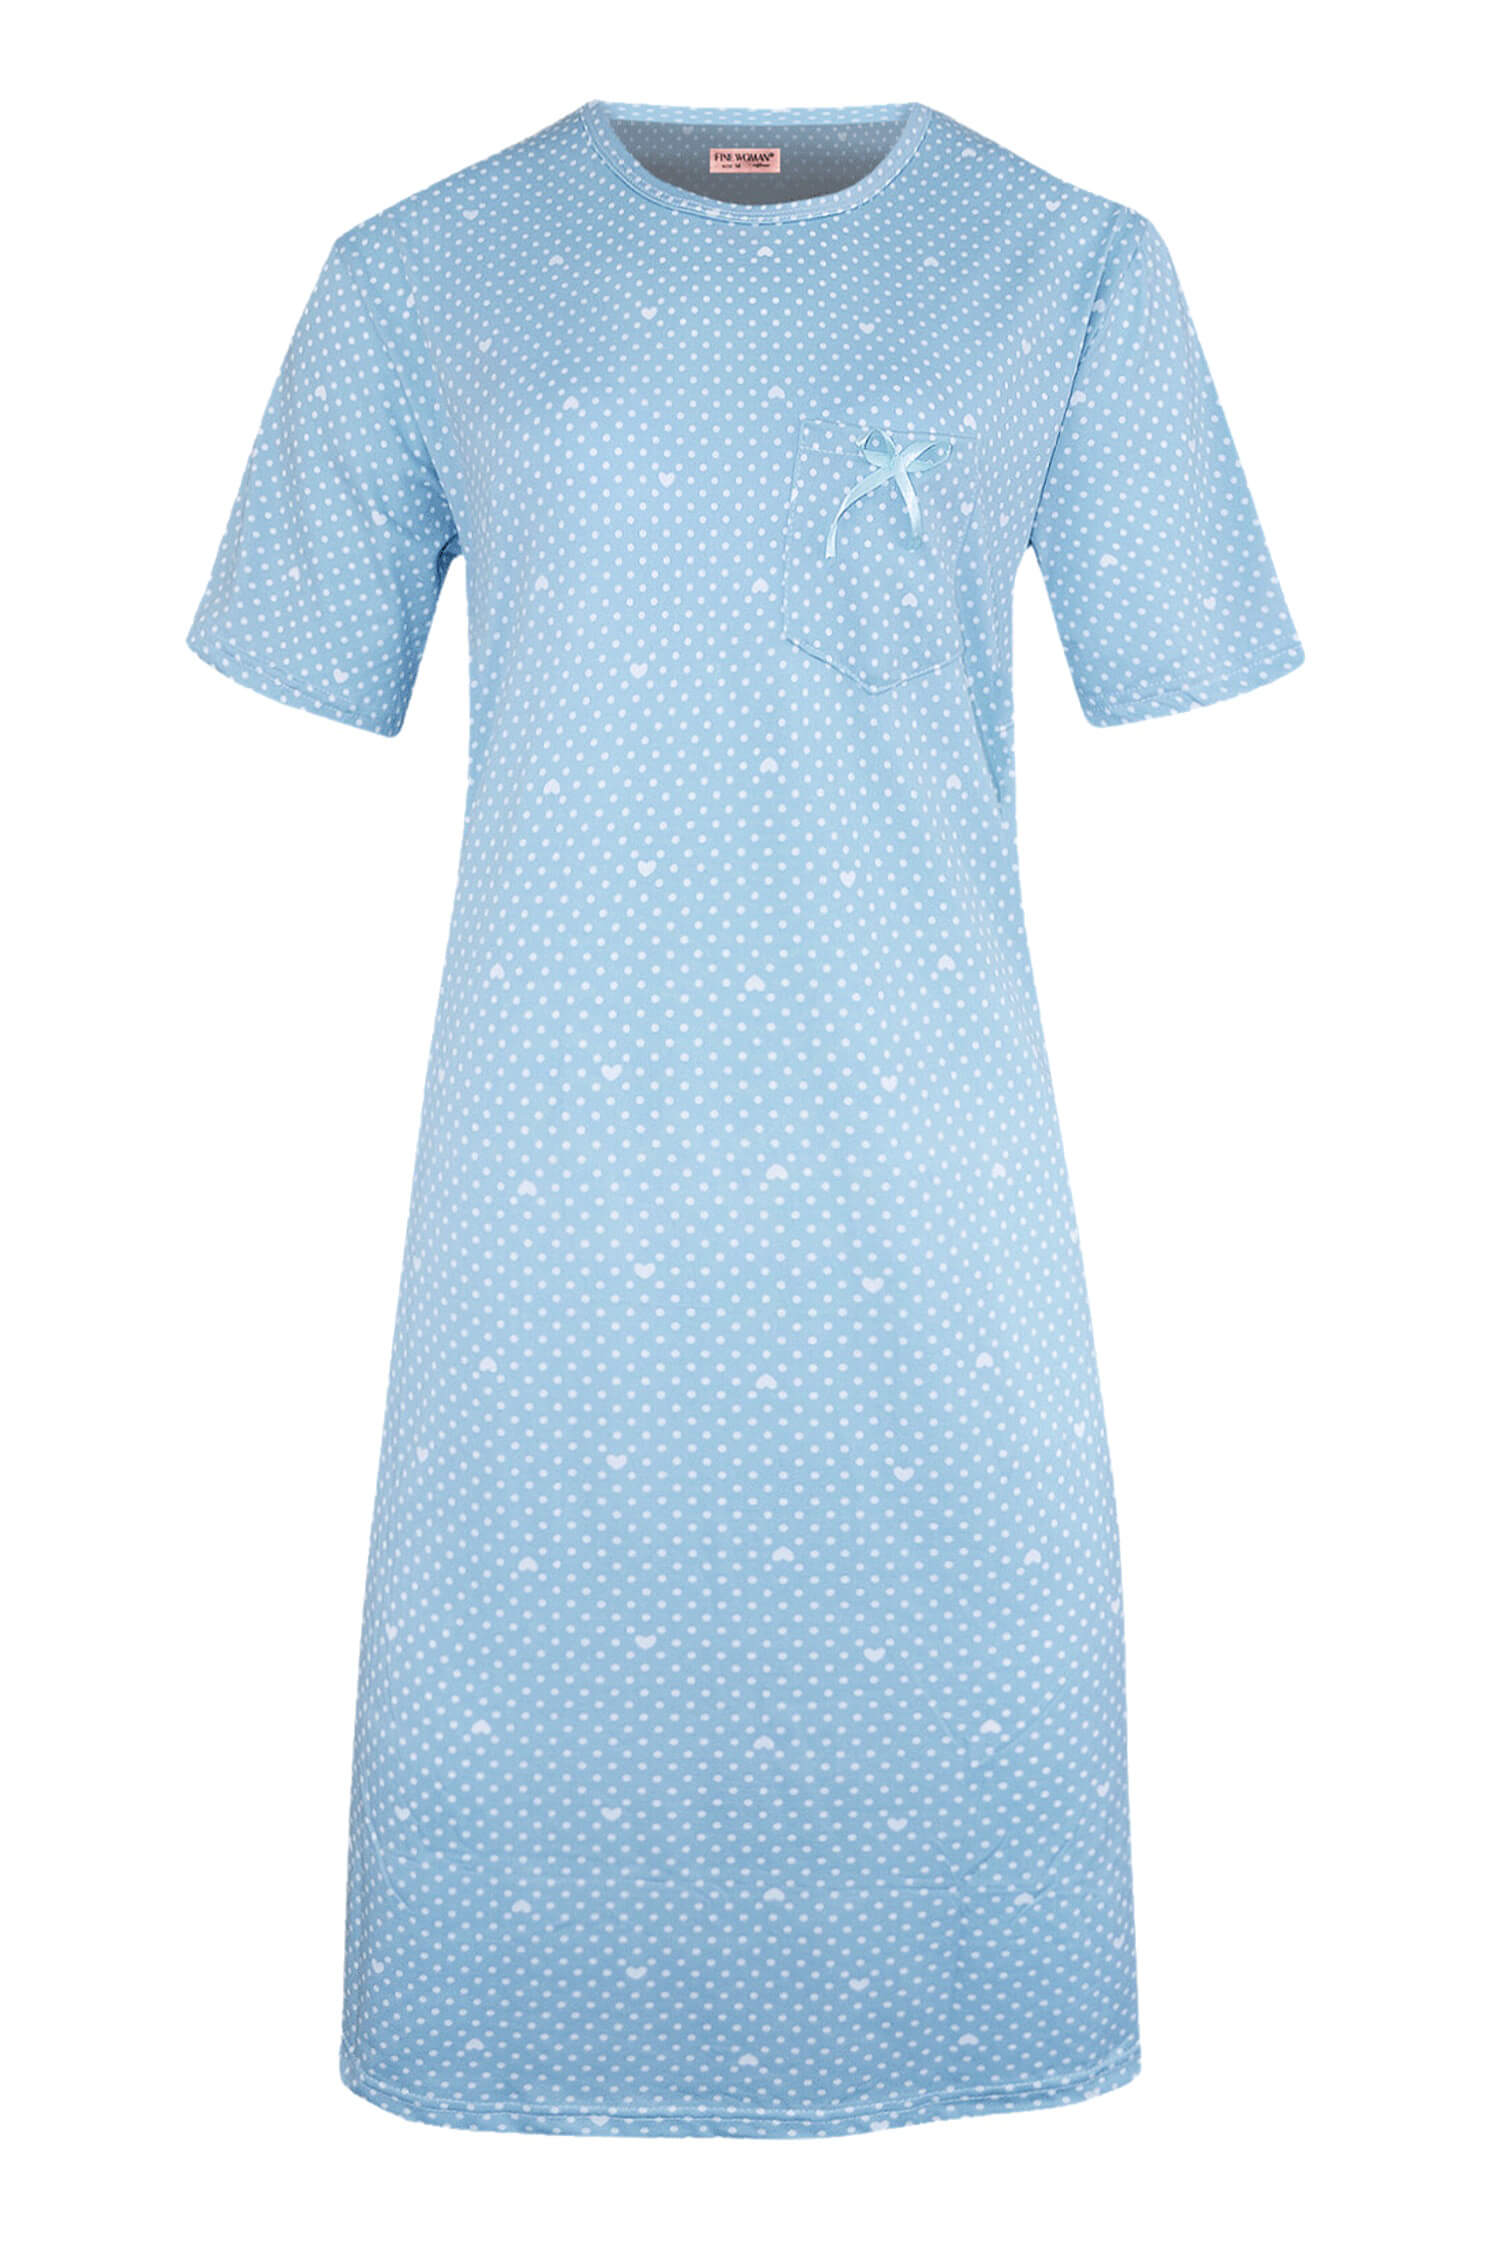 Danuška dámská noční košile s puntíky 6528 XL světle modrá